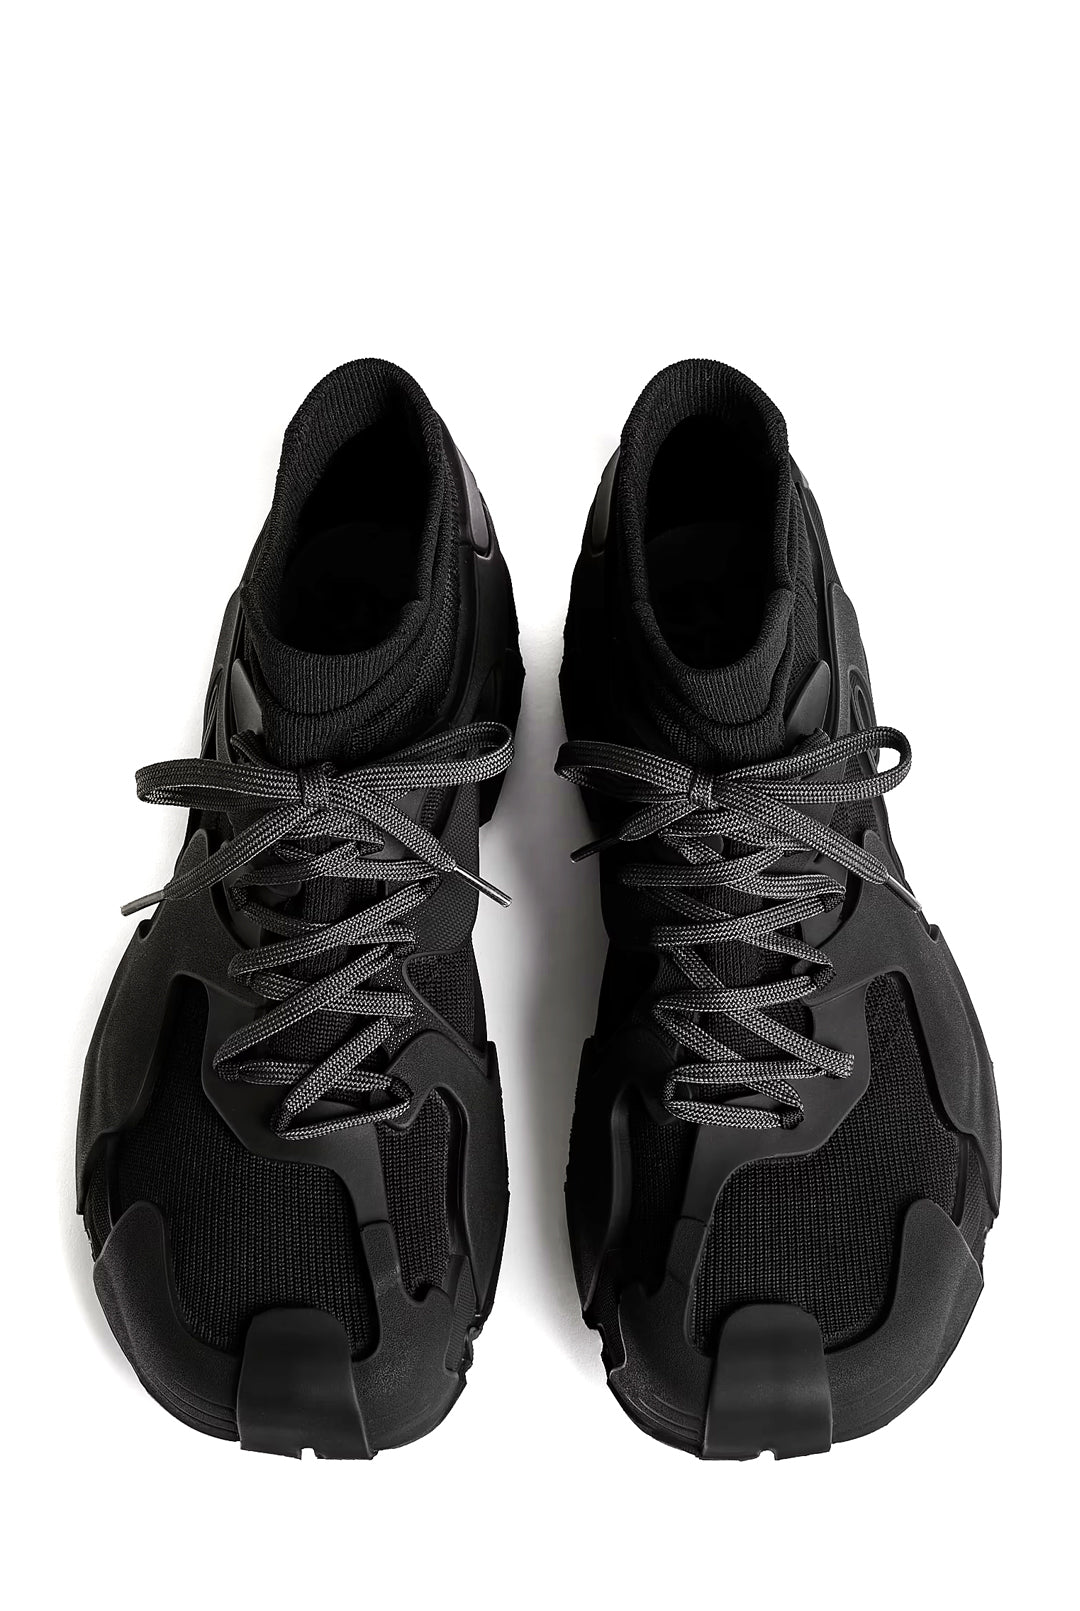 CamperLab Tossu Sneakers, Black